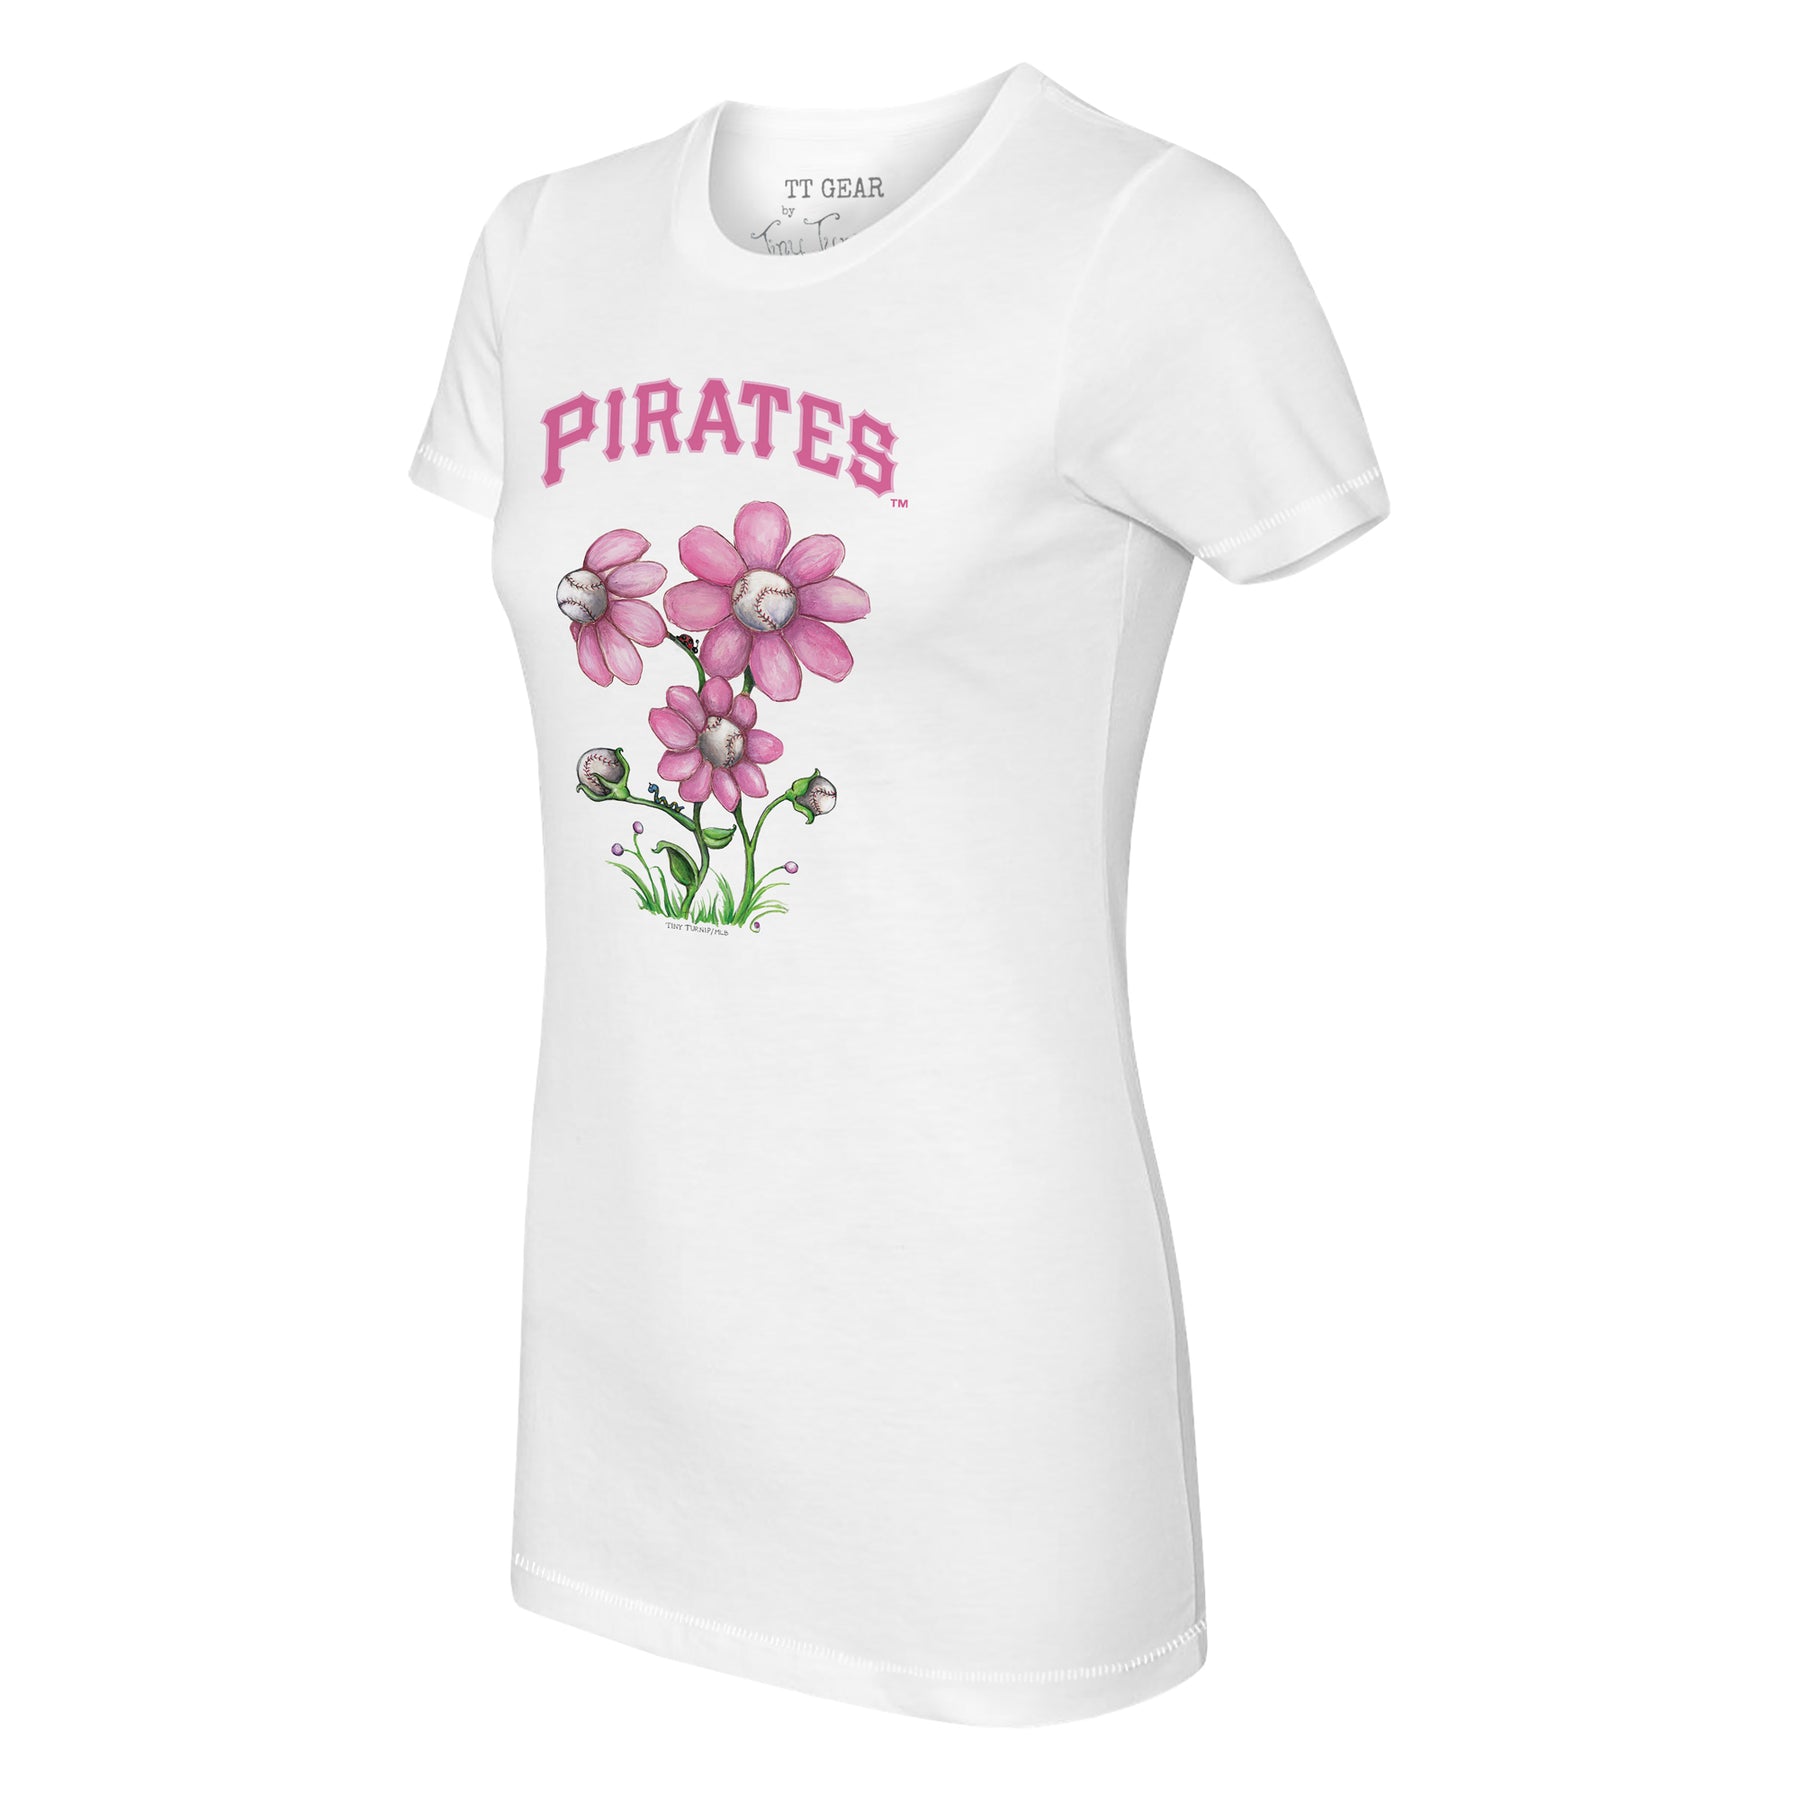 pink pittsburgh pirates shirt